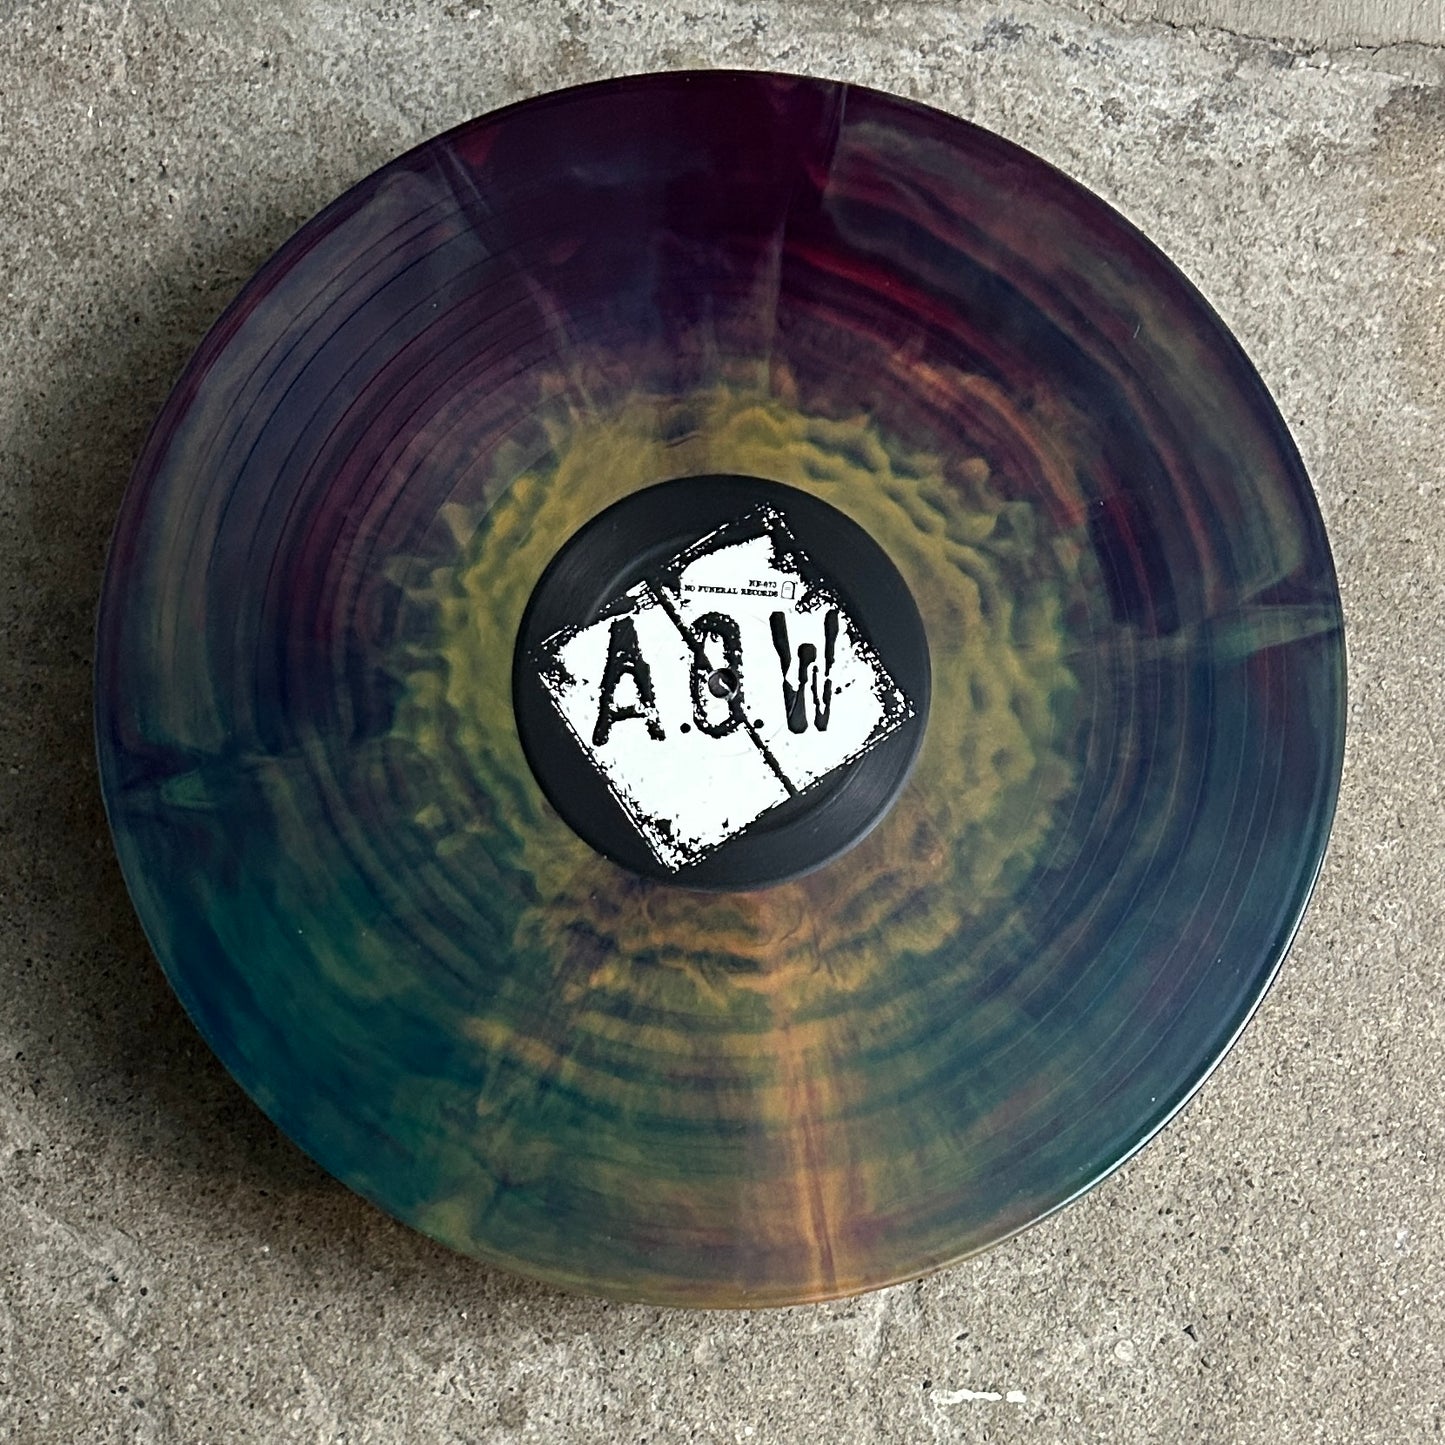 A.O.W. - Counter Culture - Vinyl